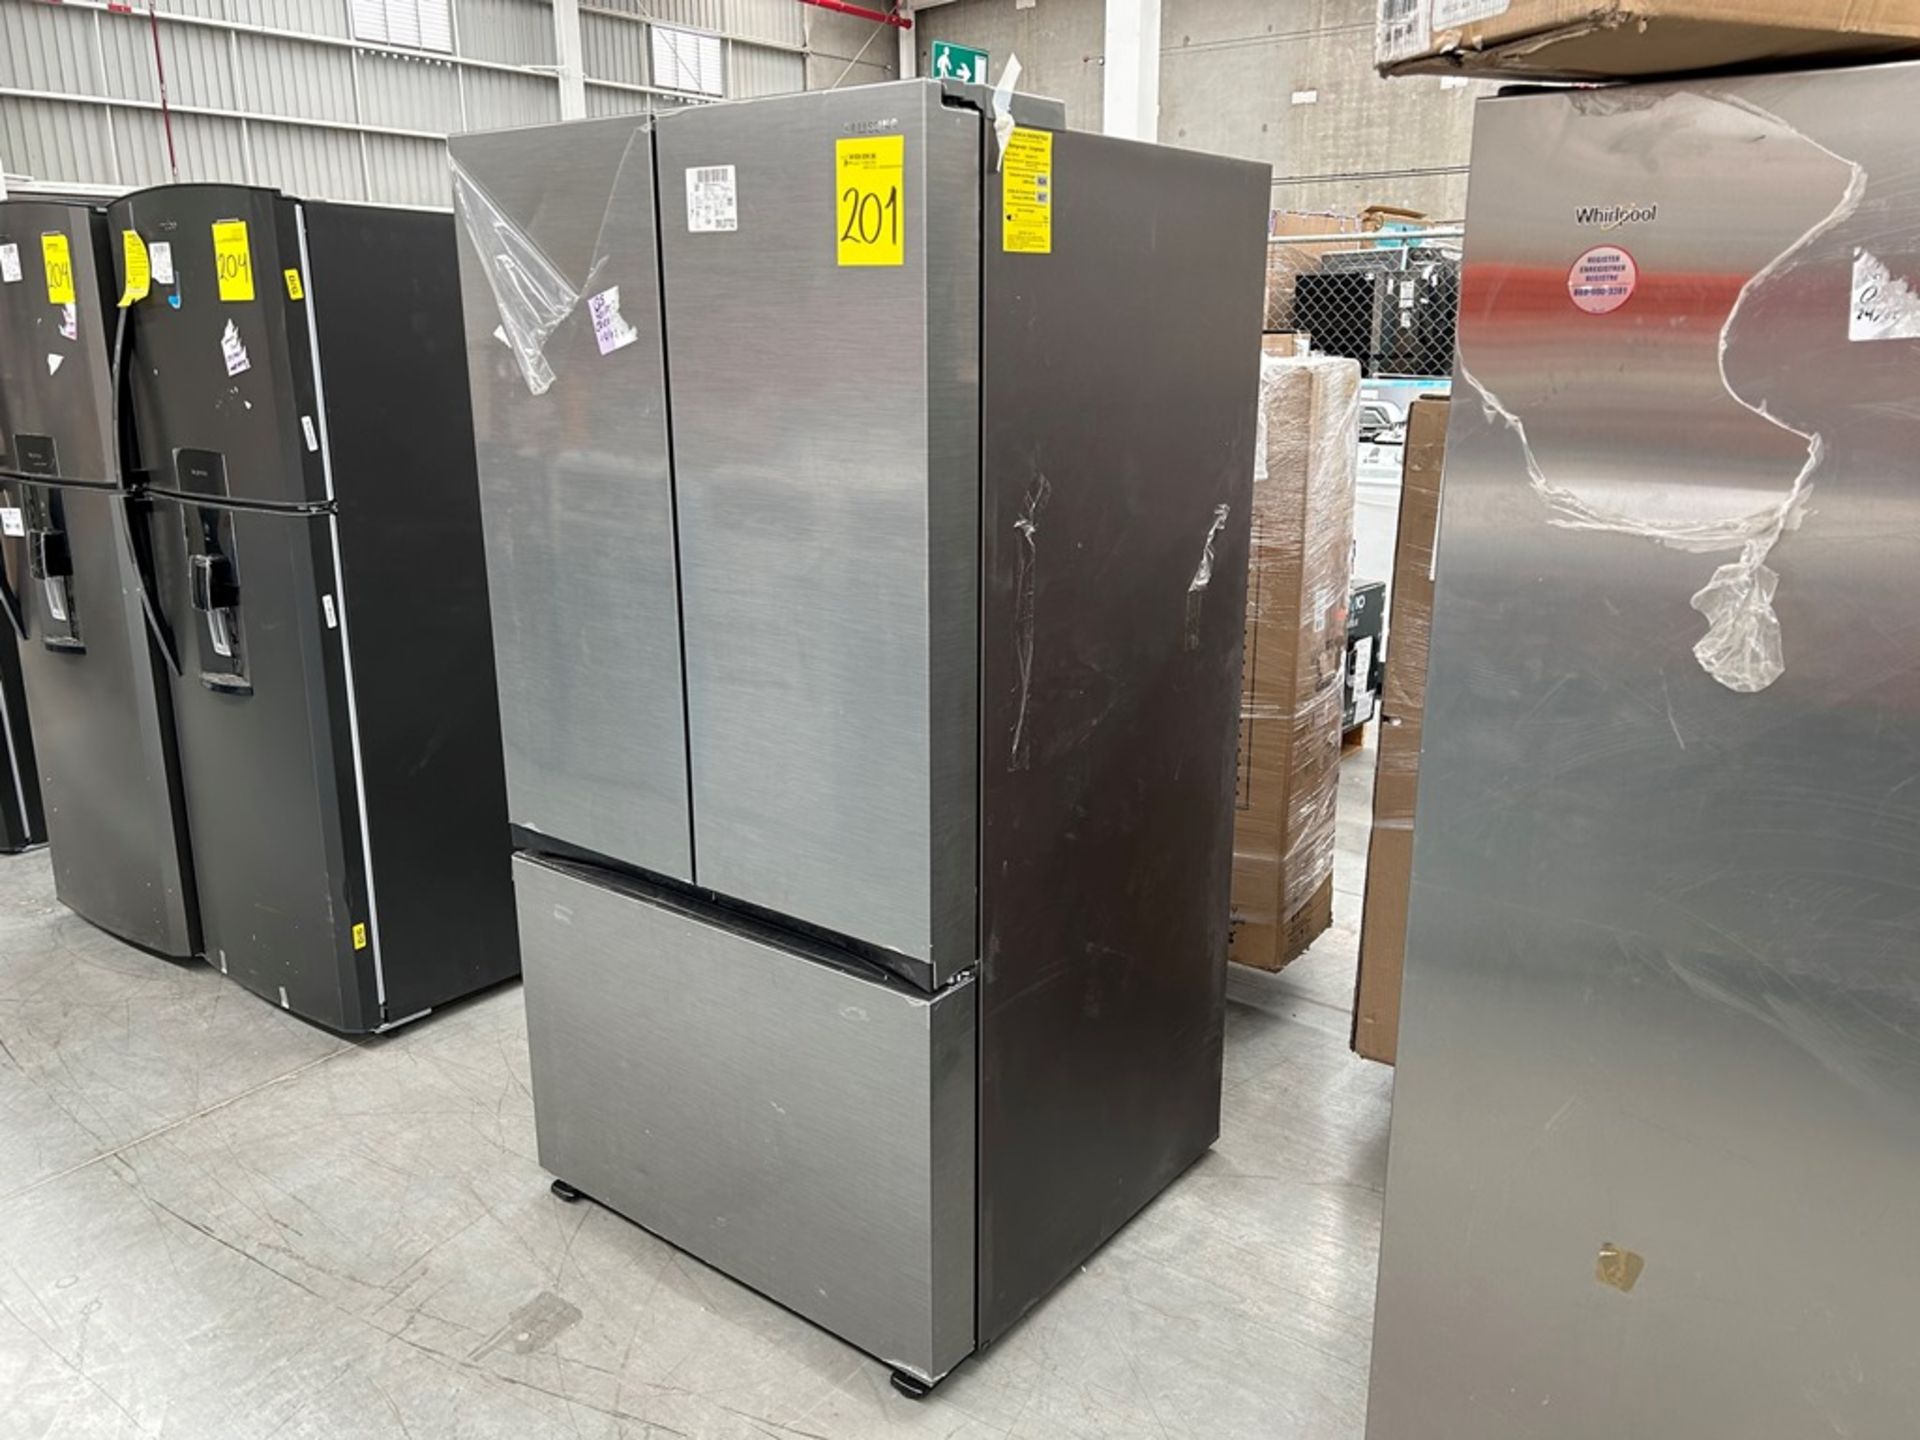 1 refrigerador Marca SAMSUNG, Modelo FR32CG5A10S9EM, Serie 01483D, Color GRIS (No se asegura su fu - Image 2 of 5